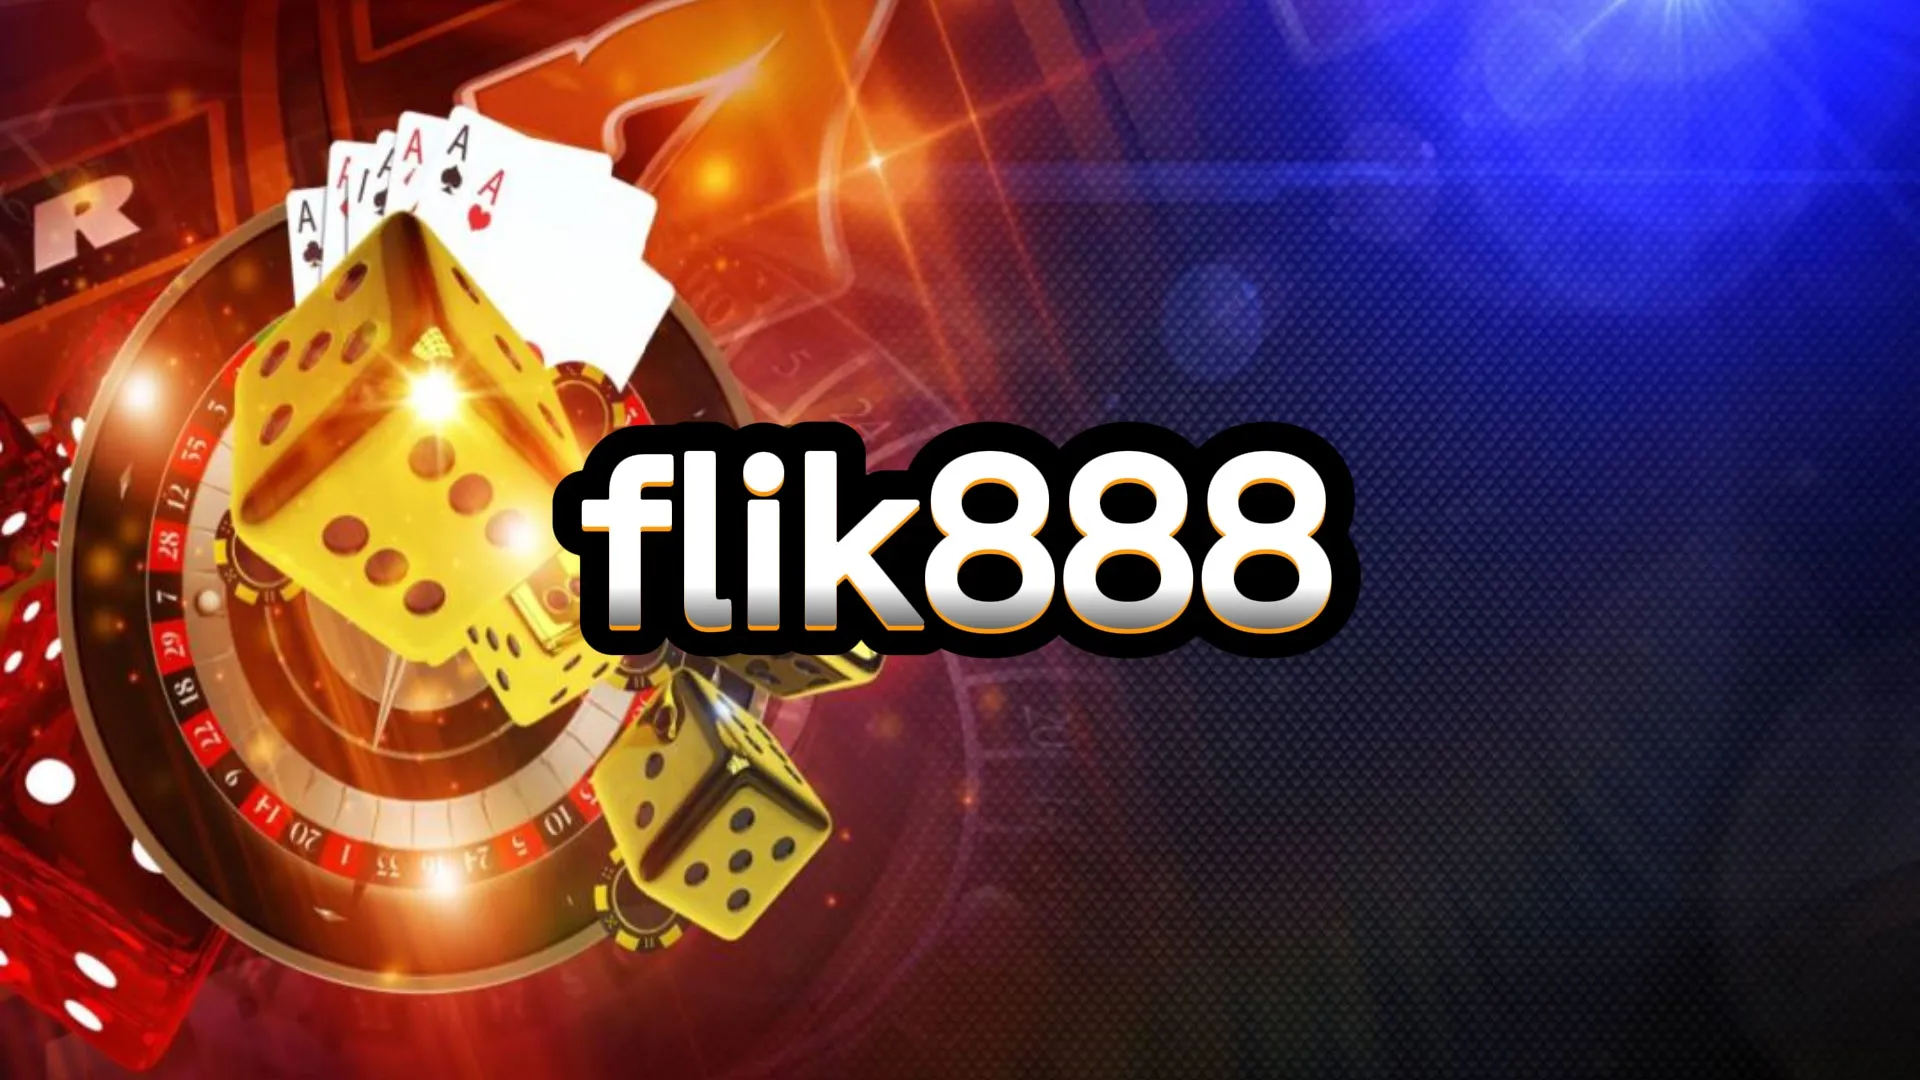 flik888